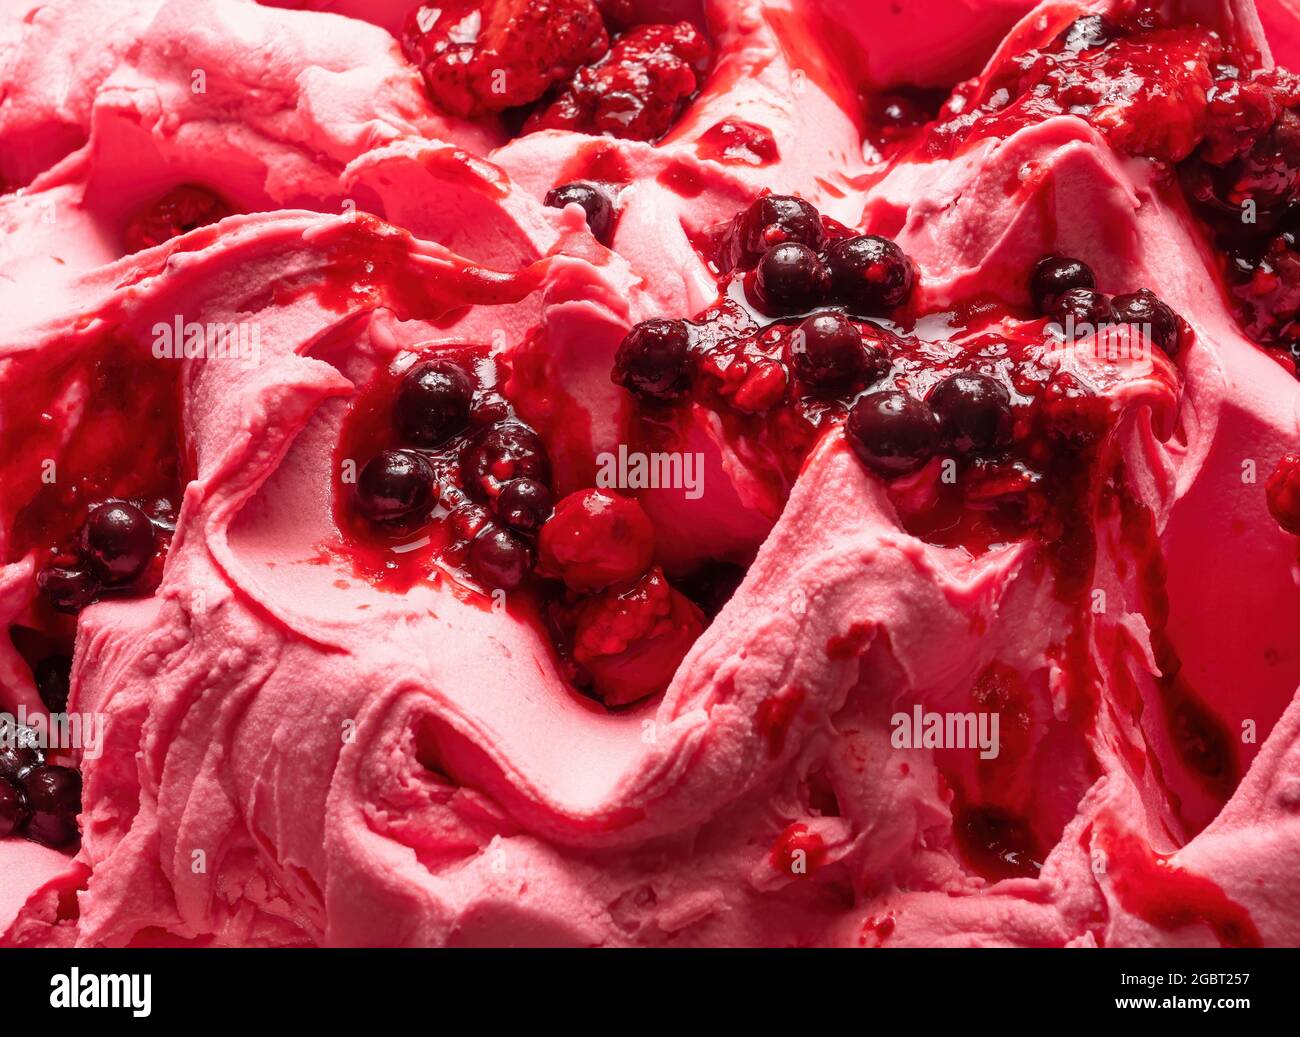 Frozen Forest Flavour gelato - dettaglio full frame. Primo piano di una superficie rosa di gelato coperto con pezzi di frutta rossa. Foto Stock